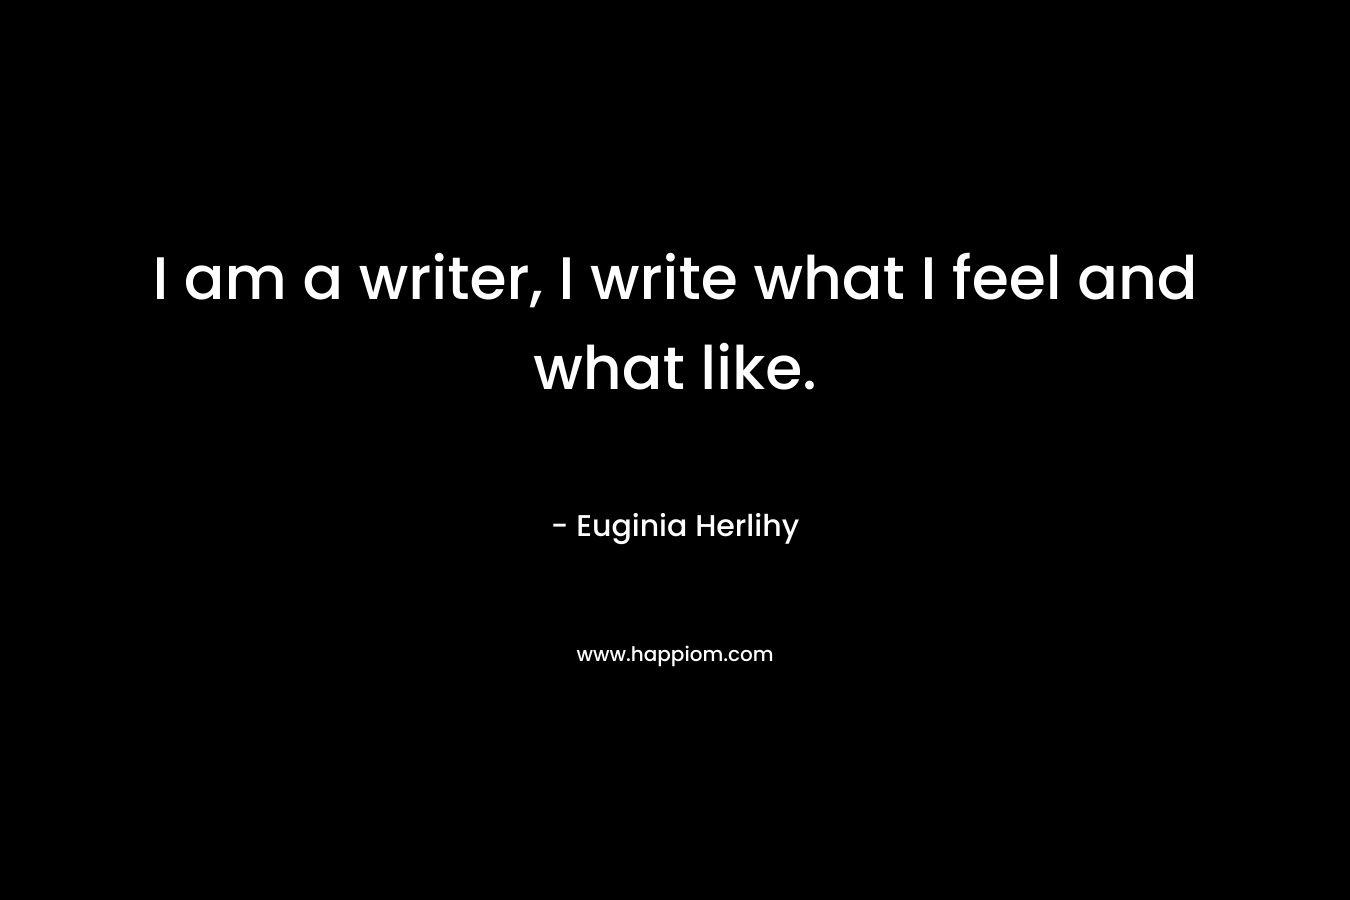 I am a writer, I write what I feel and what like.